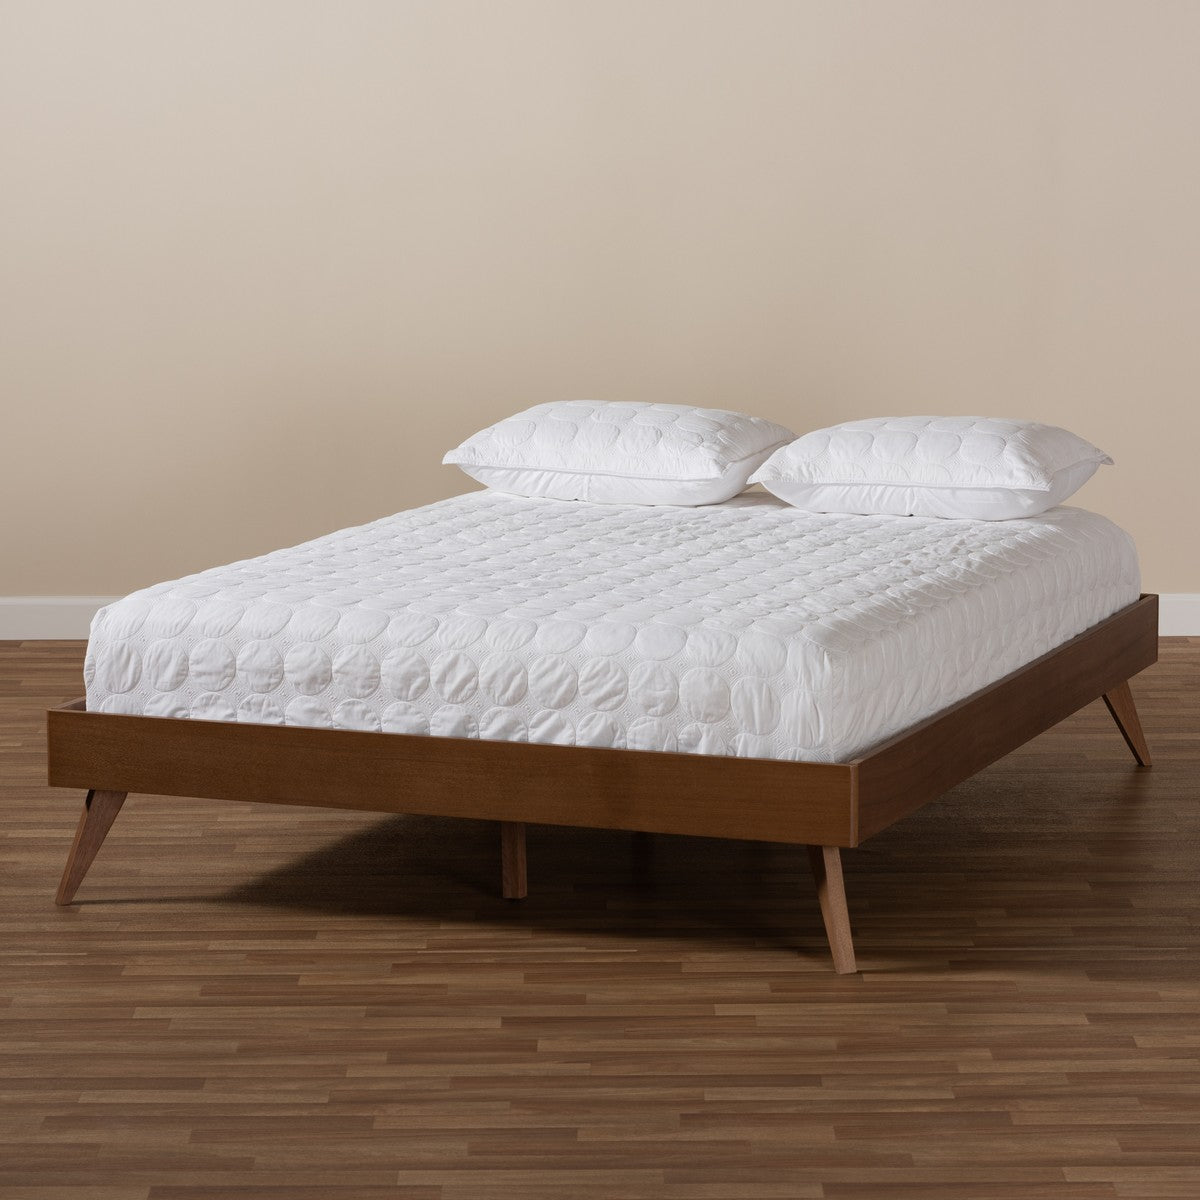 Baxton Studio Lissette Mid-Century Modern Walnut Brown Finished Wood King Size Platform Bed Frame